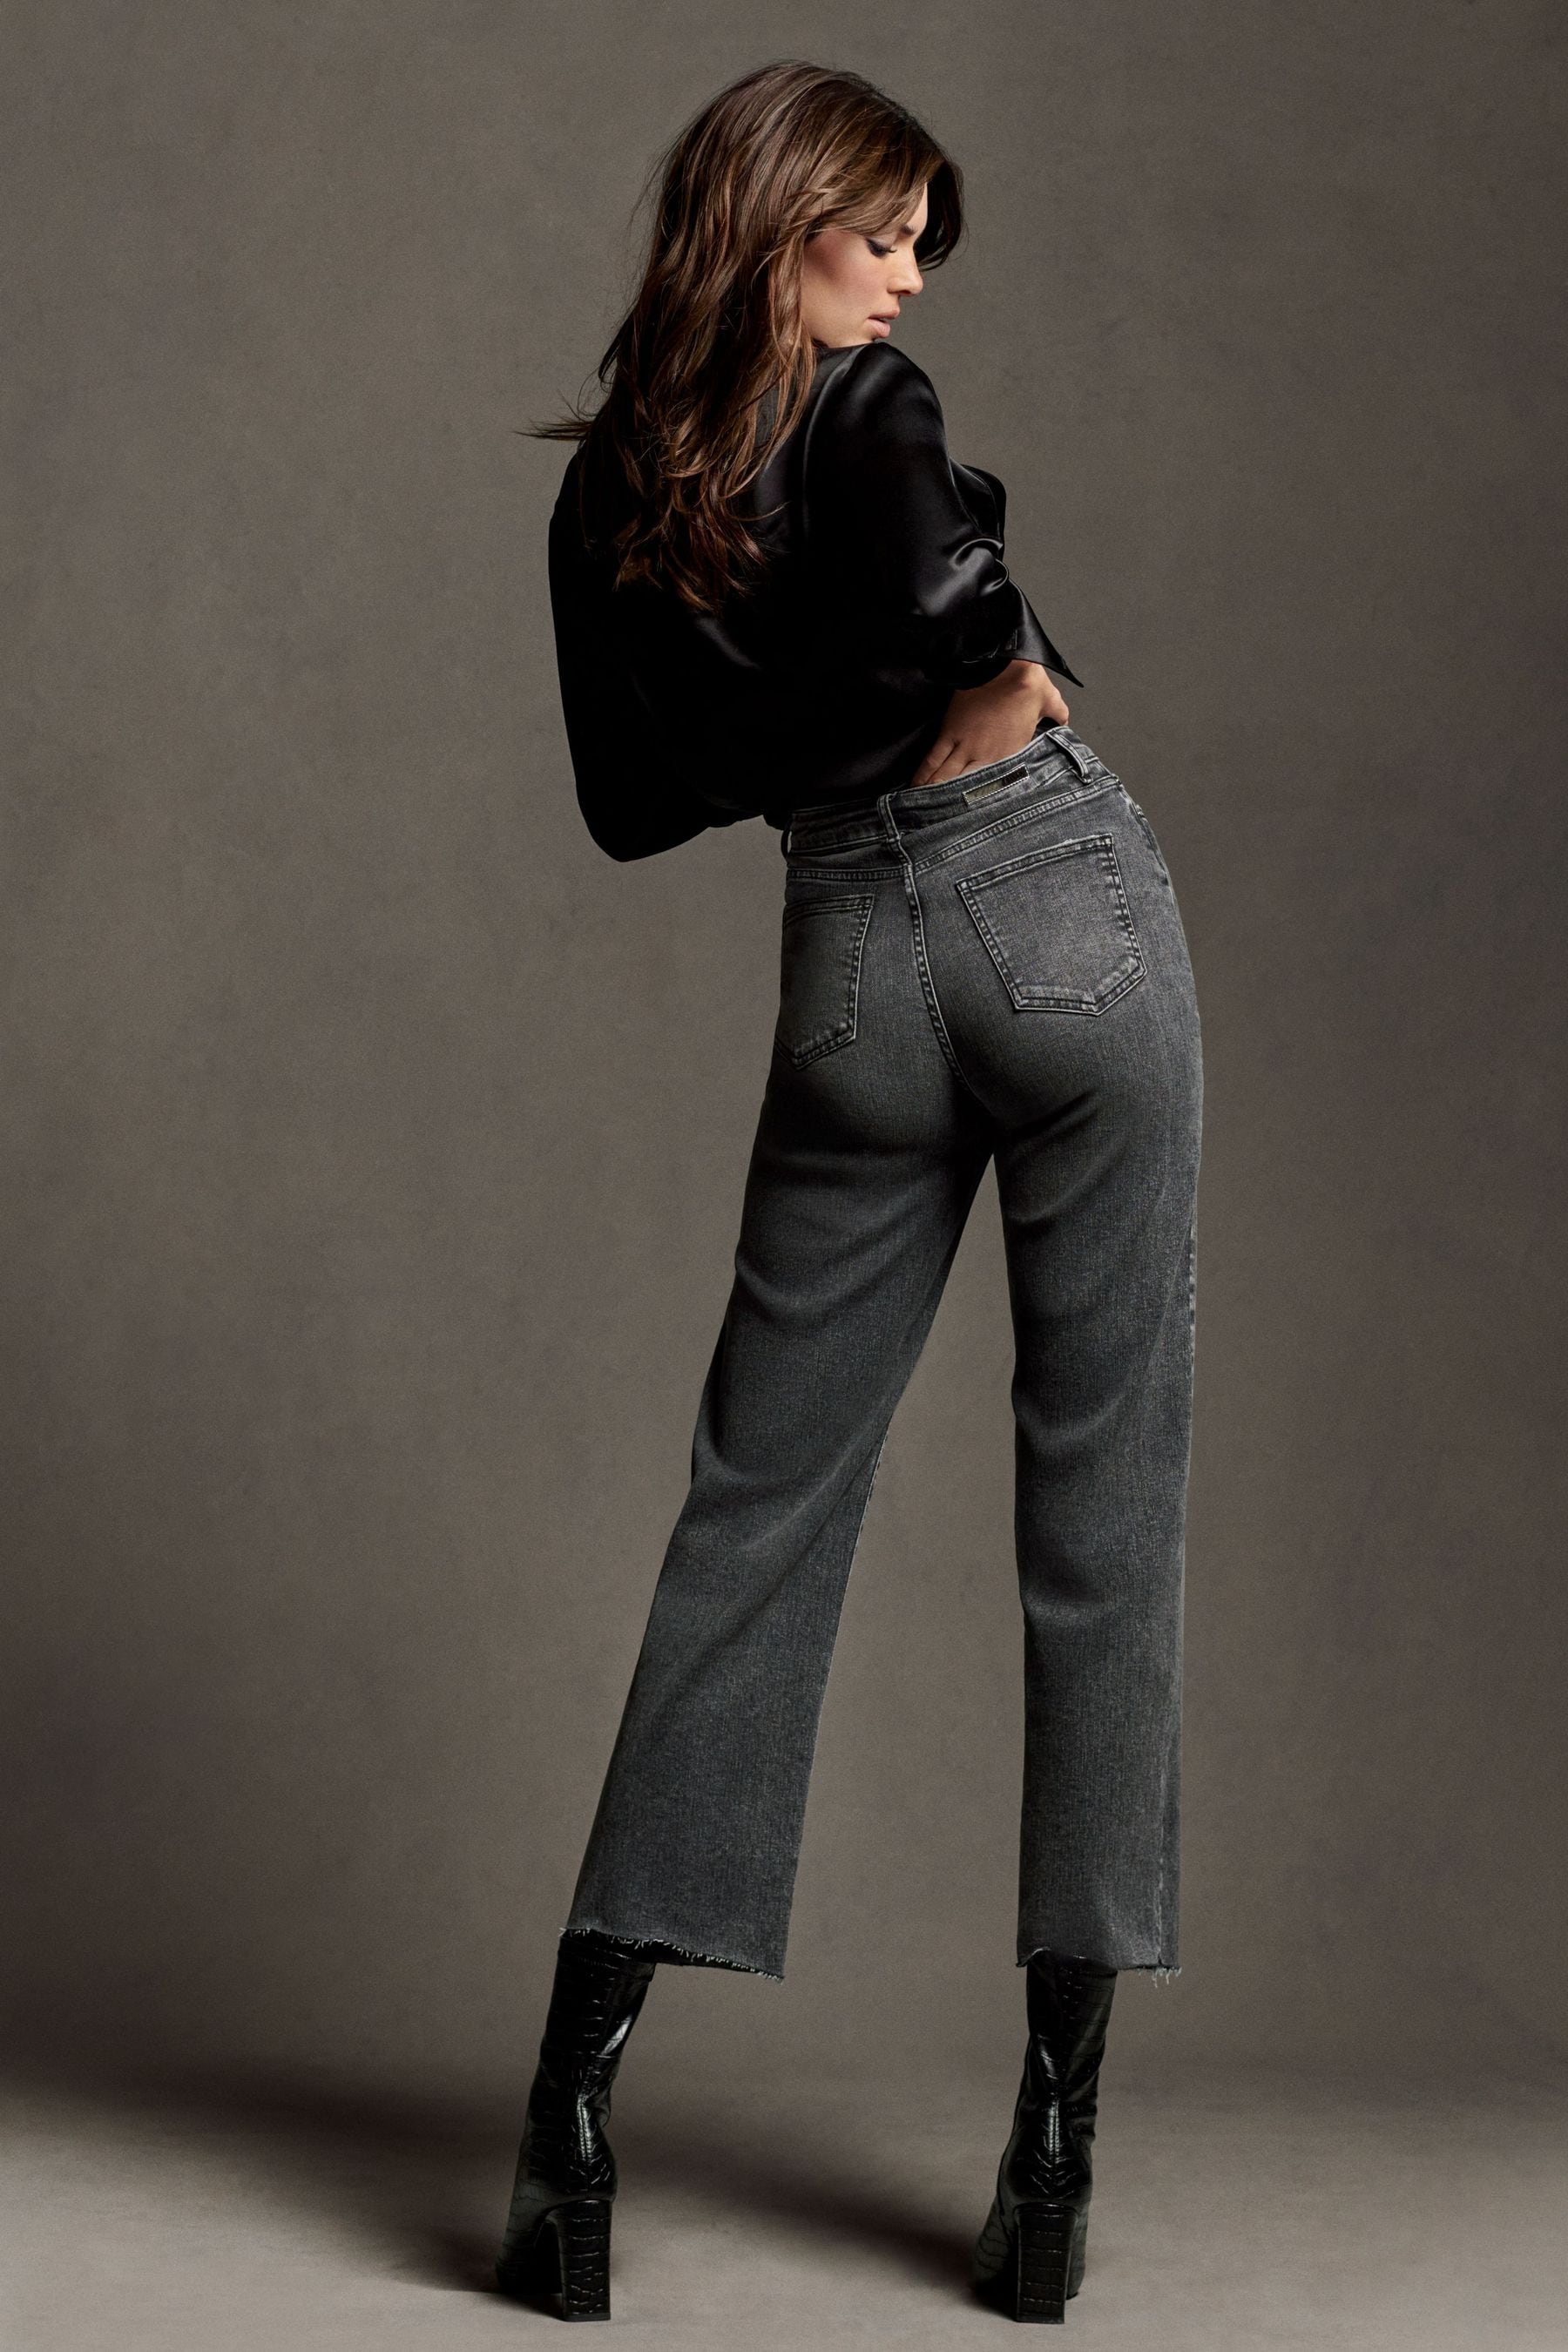 Kendall Jenner Women Model Fashion Jeans Long Hair Brunette Studio Women Indoors 1800x2700